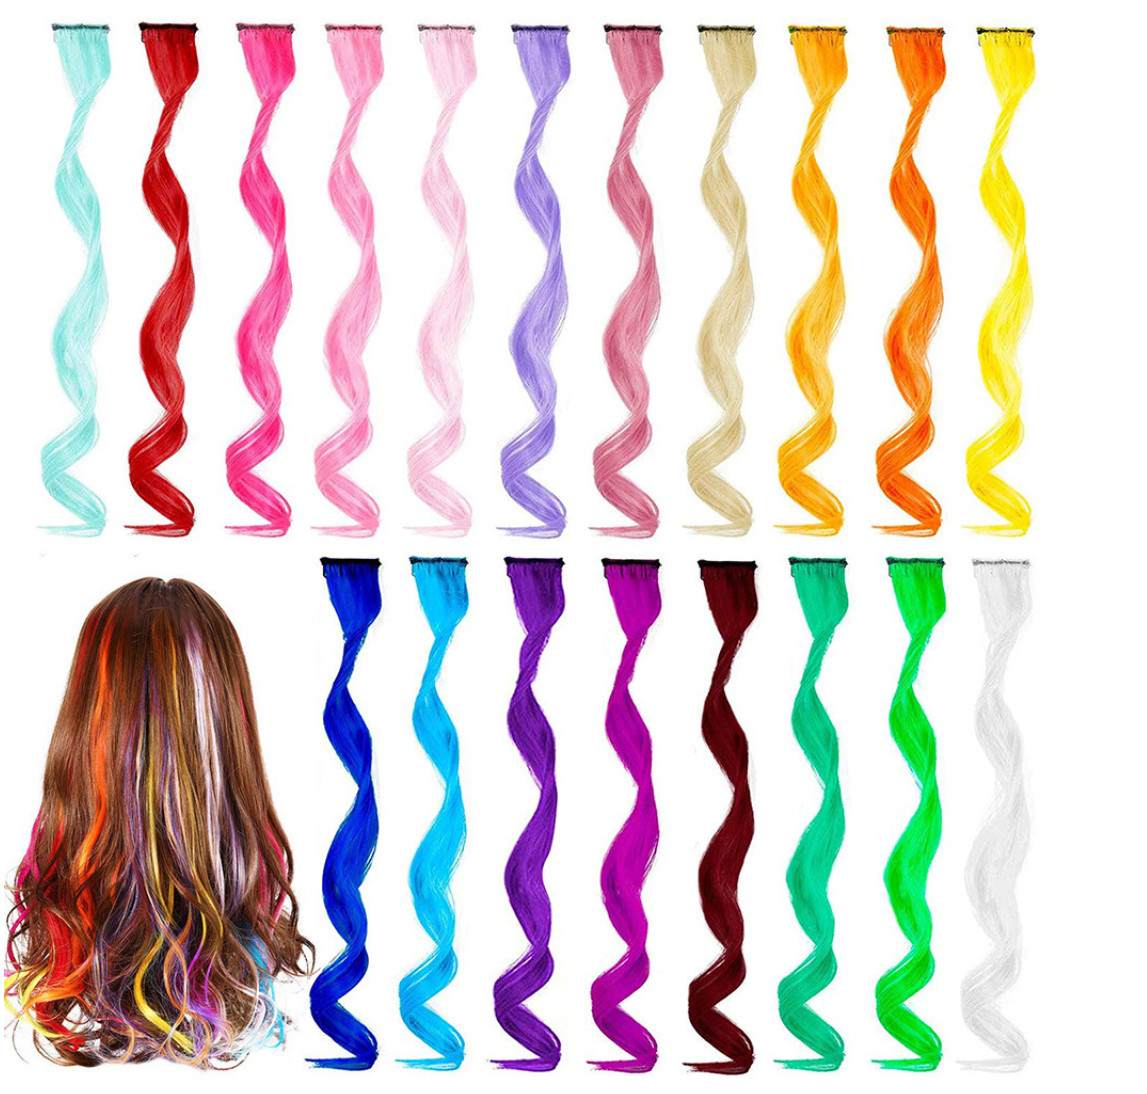 20-Zoll-Farbverlauf, nahtlos, ein Clip, lockiges Haar, langes, lockiges Chemiefaserhaar mit vielen Stilen zur Auswahl, die die individuelle Anpassung unterstützen